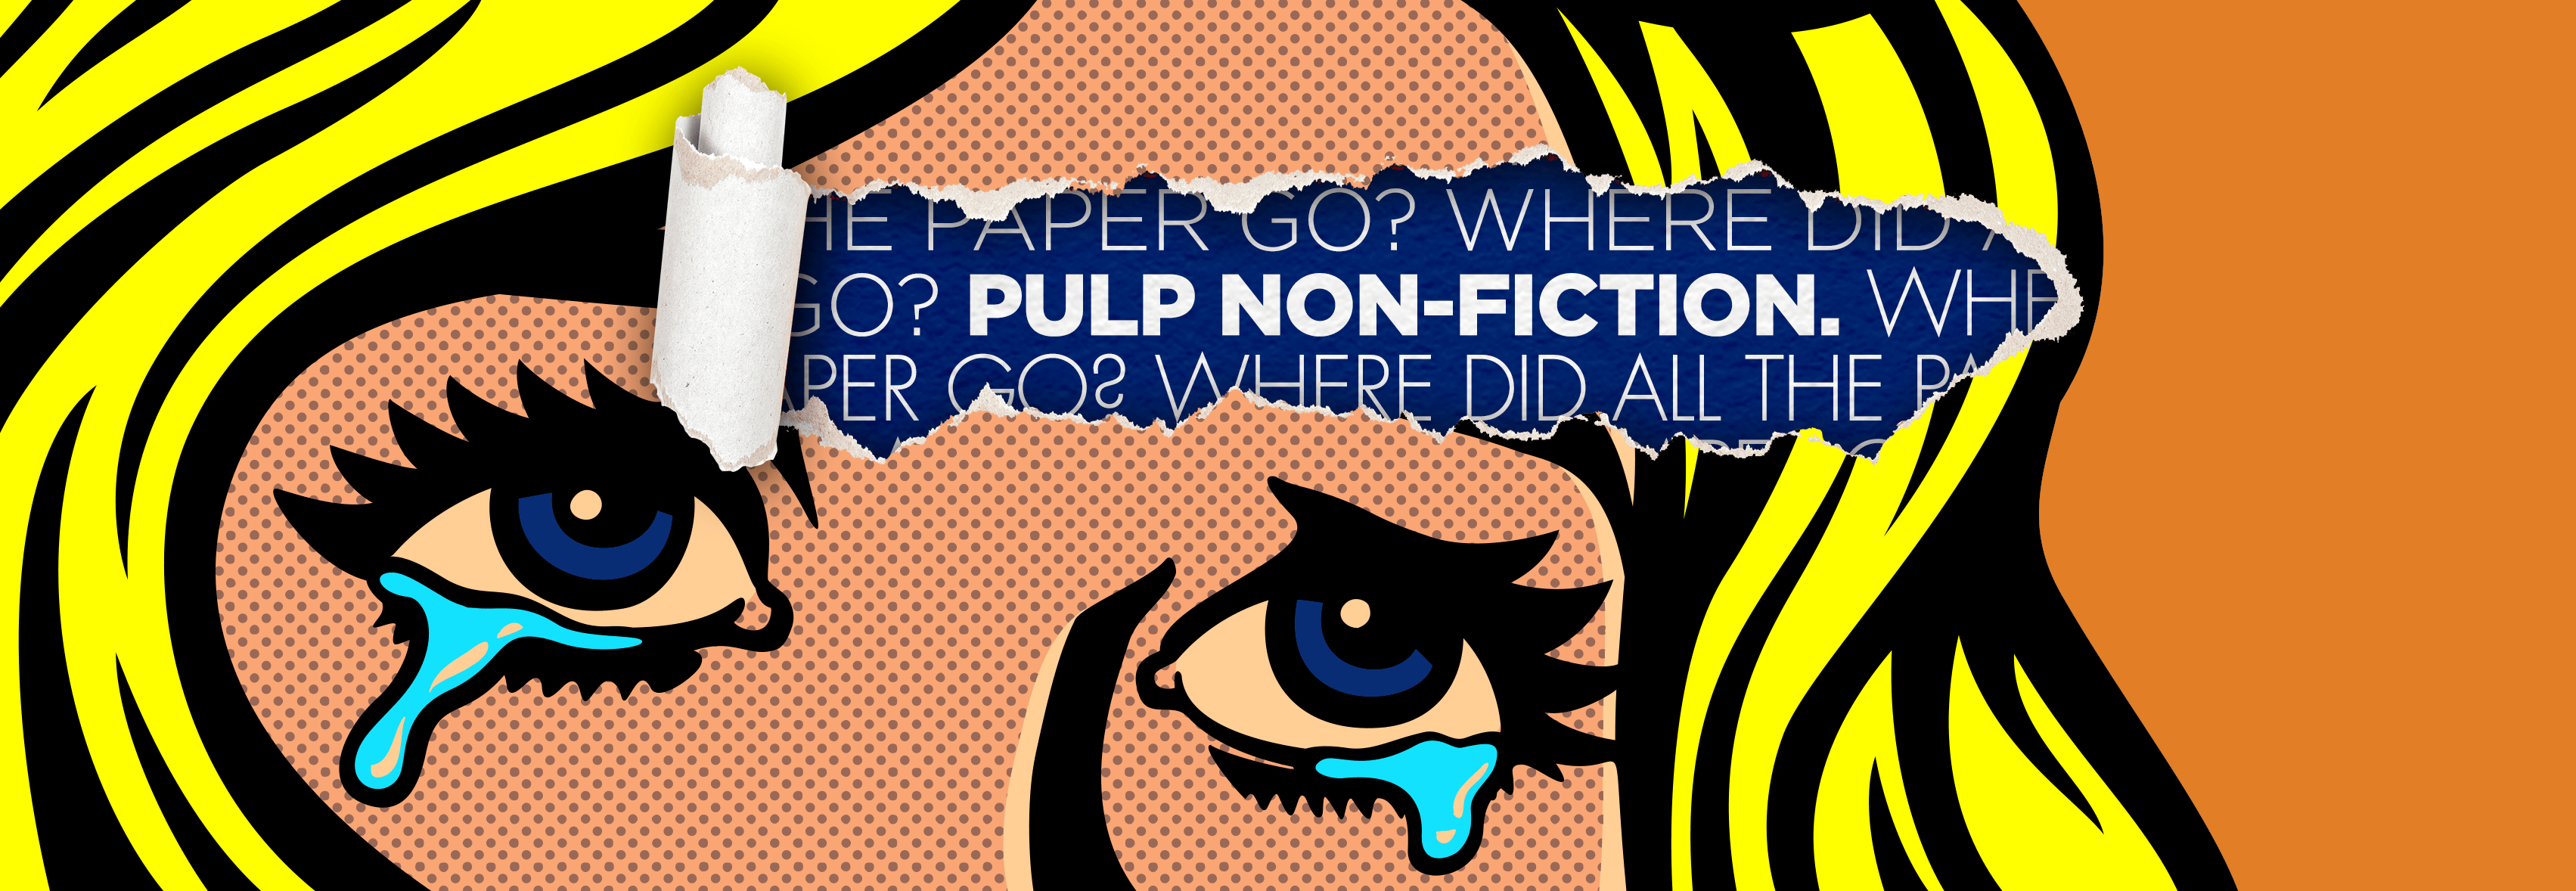 Pulp Non-Fiction Header